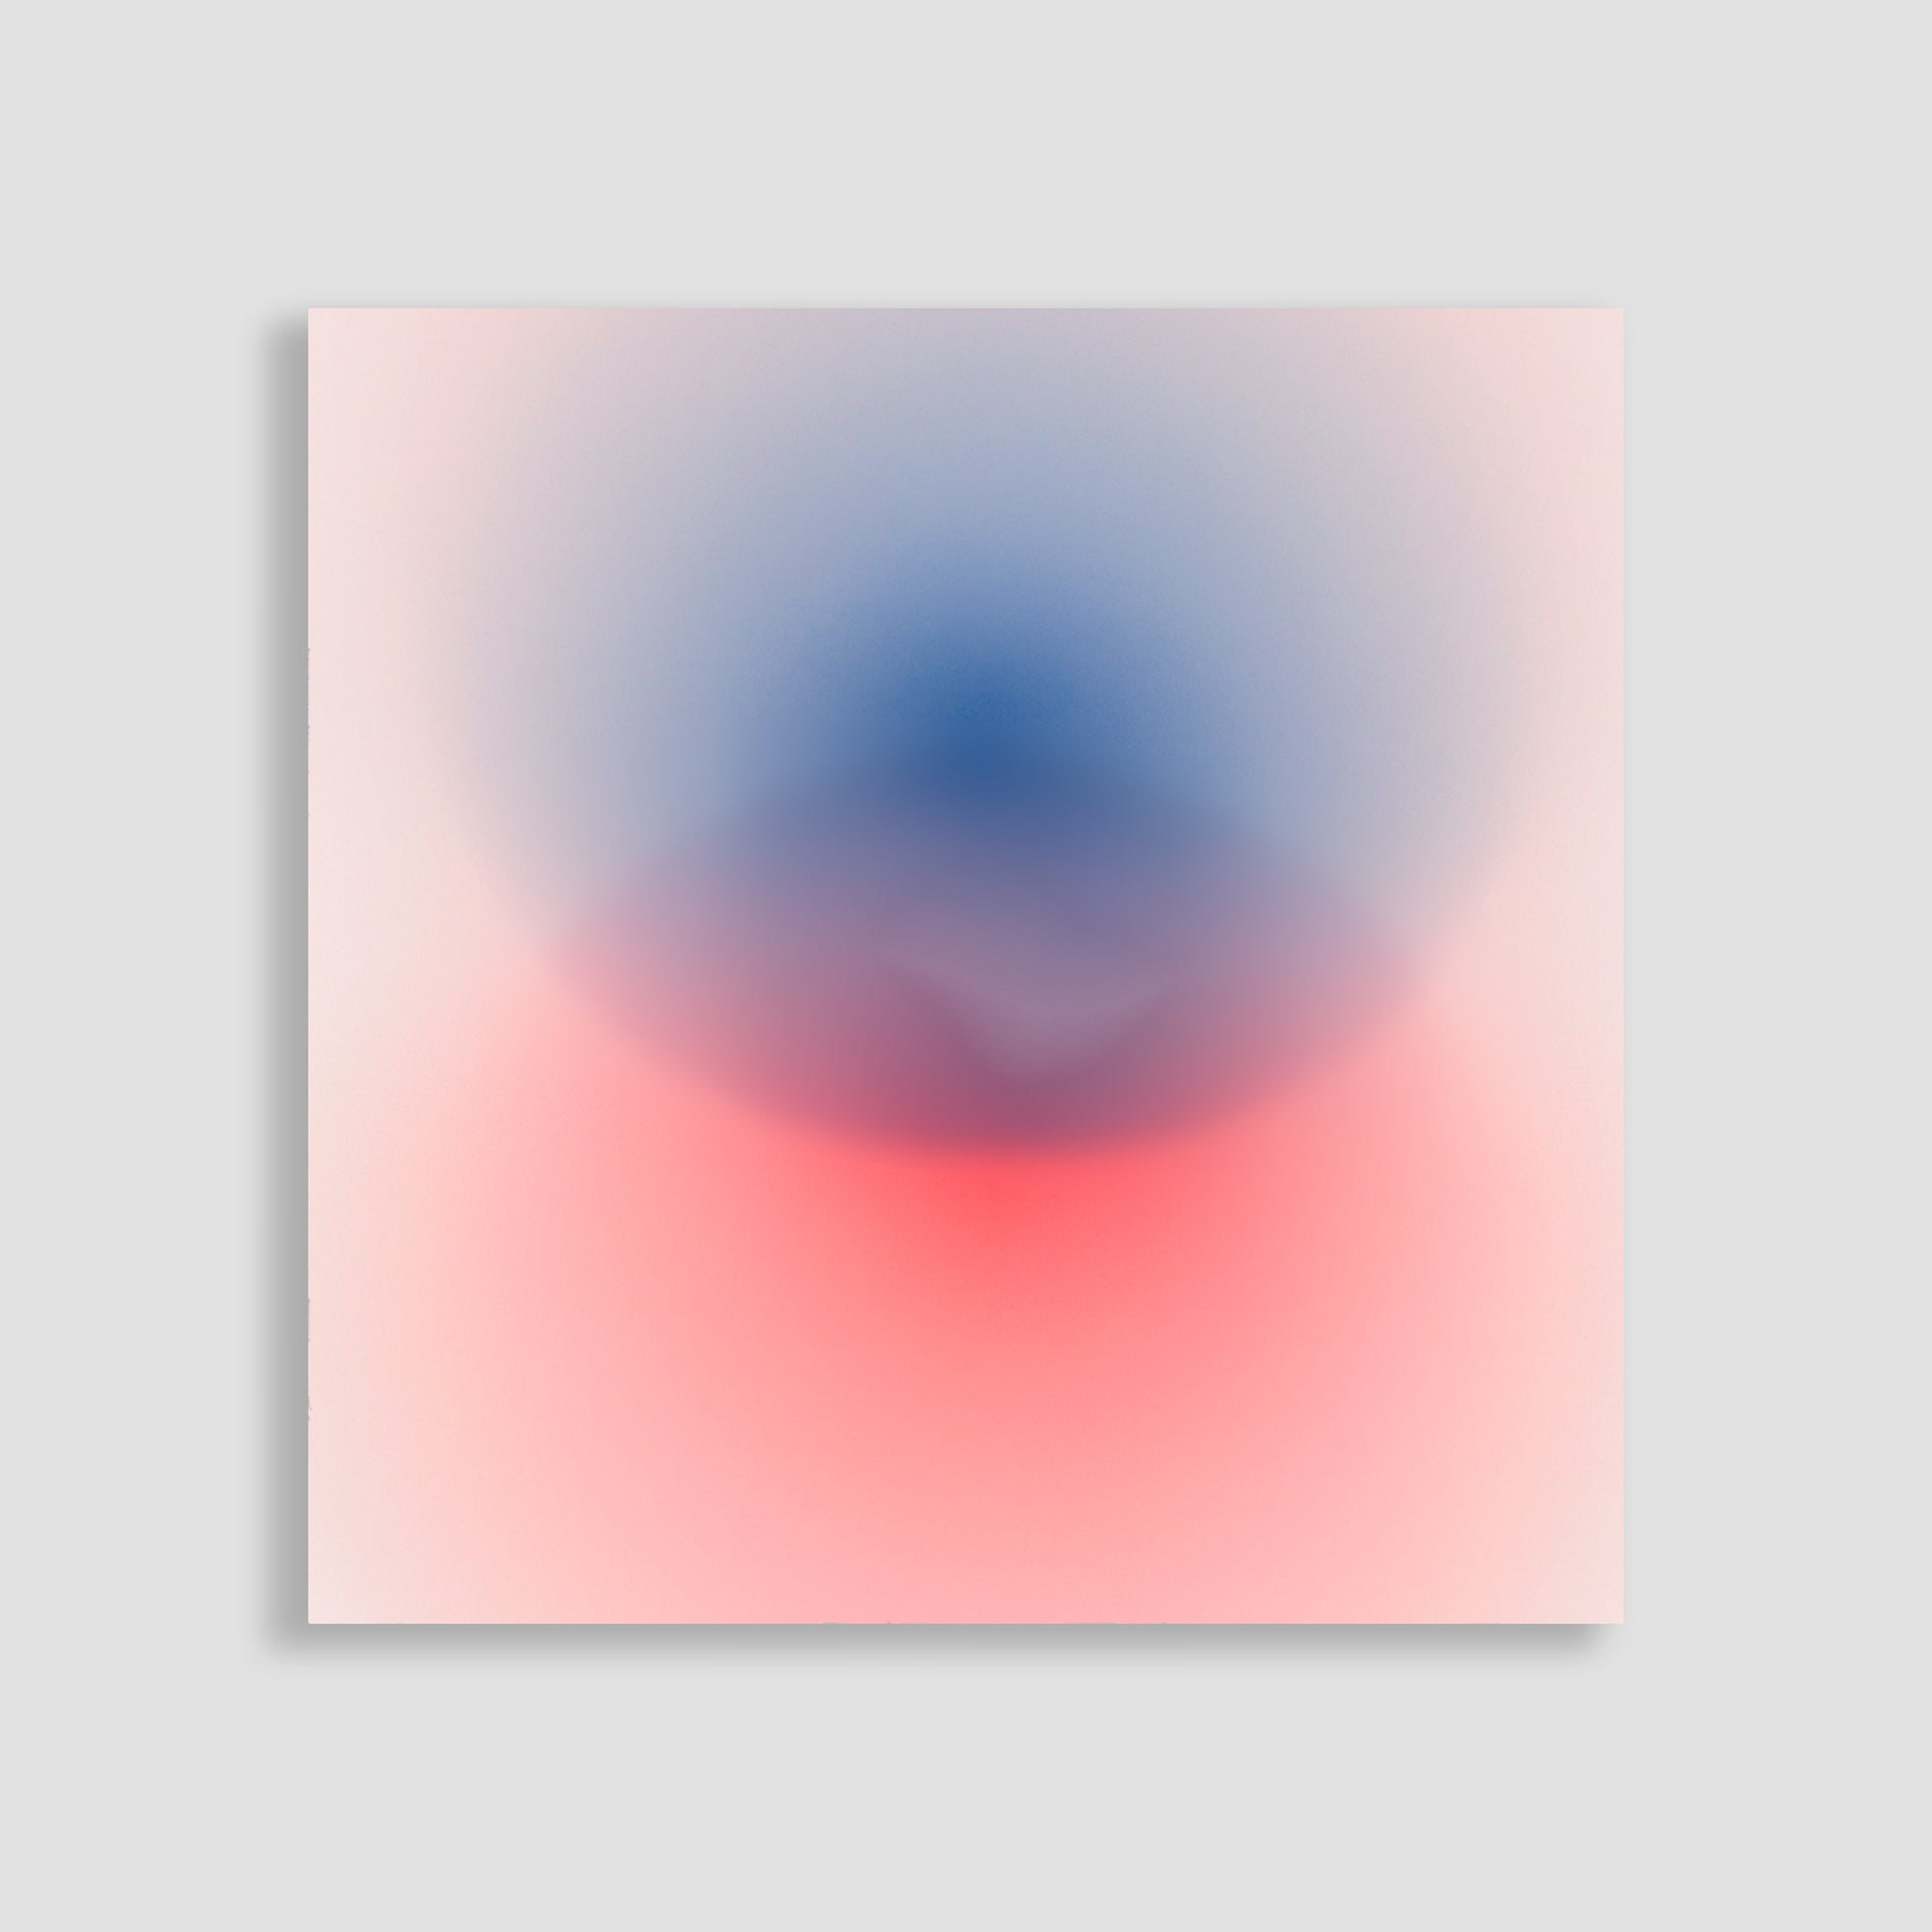 Cuadro decorativo Imagen de arte abstracto que muestra una fusión de colores rojo y azul en un fondo claro, creando un efecto visual suave y etéreo.para el hogar y la oficina